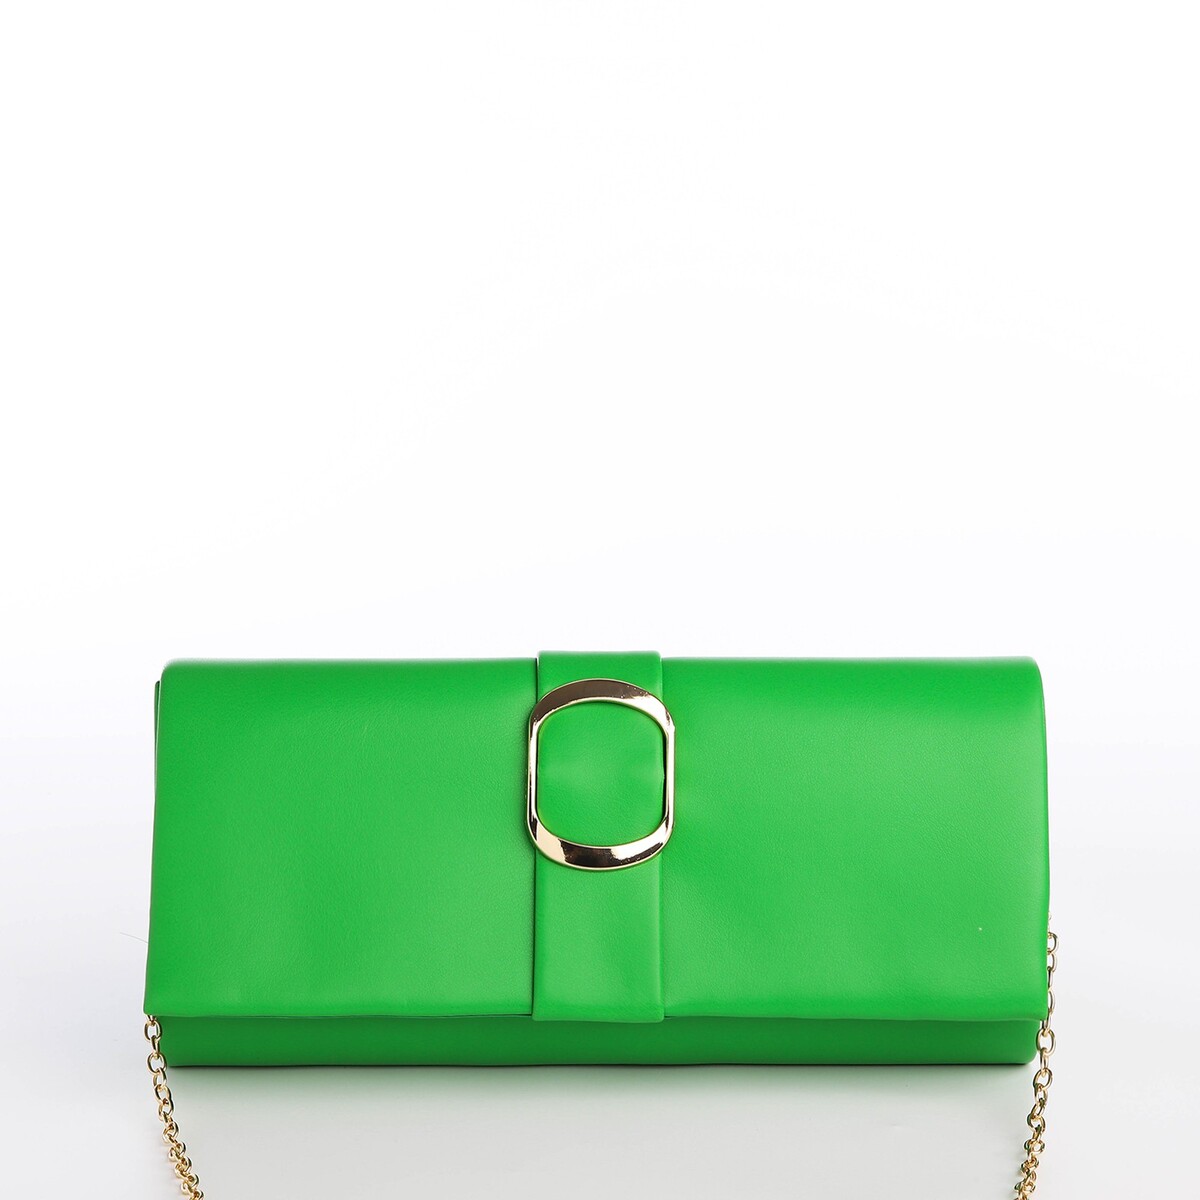 Сумка-клатч на магните, цвет зеленый сумка клатч на магните ремешок на запястье зелёный